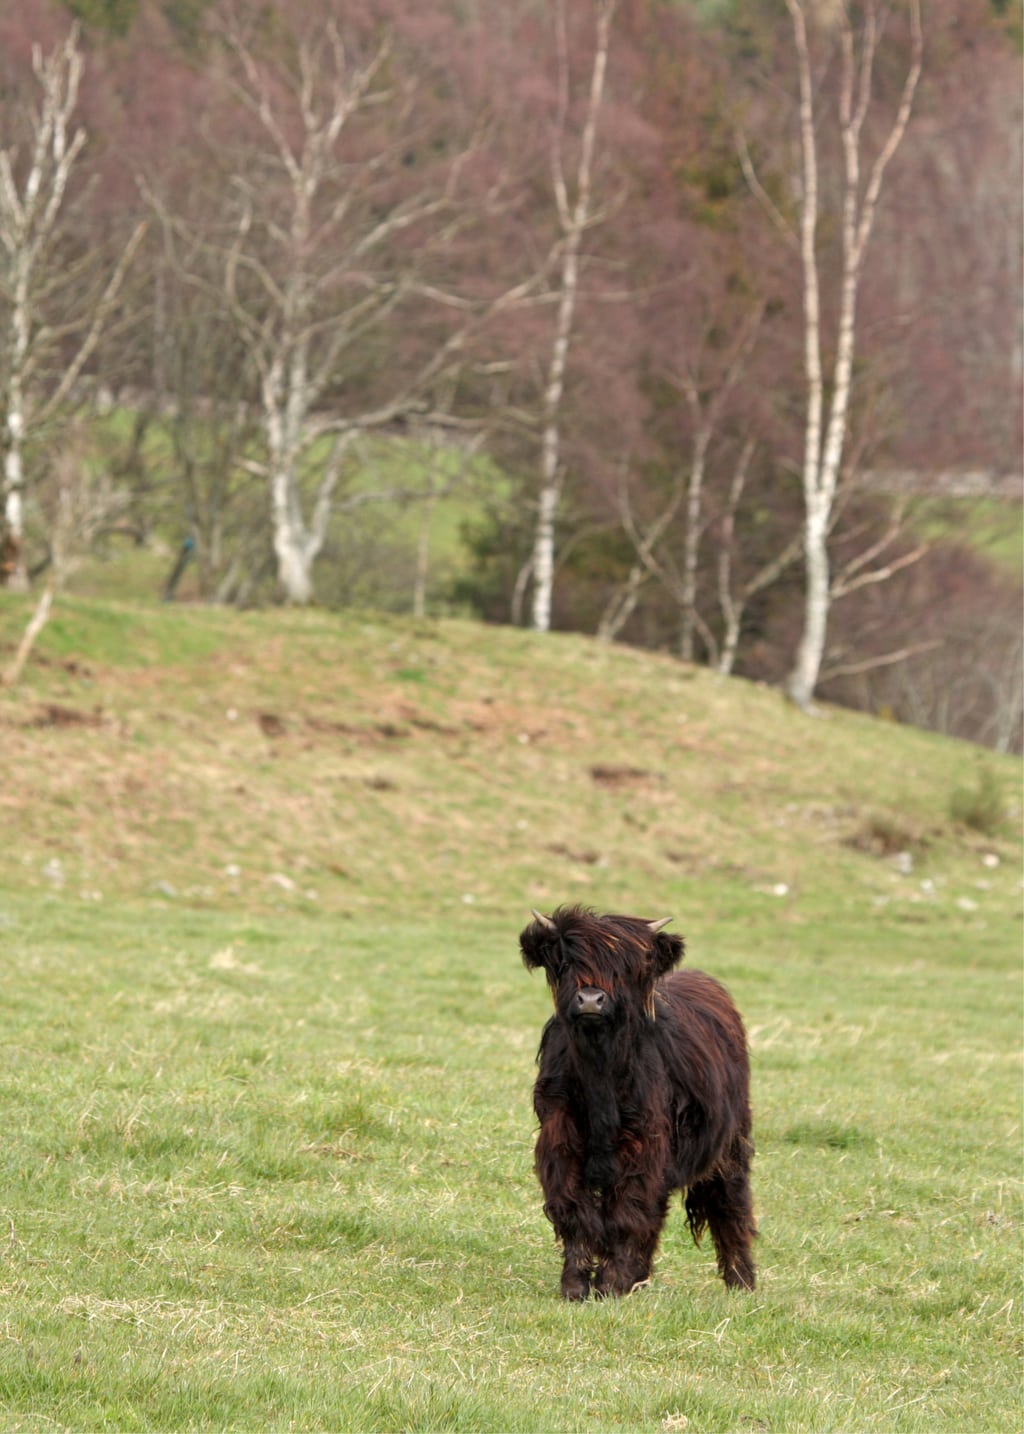 Highland cow calf, near Ballater in Scotland